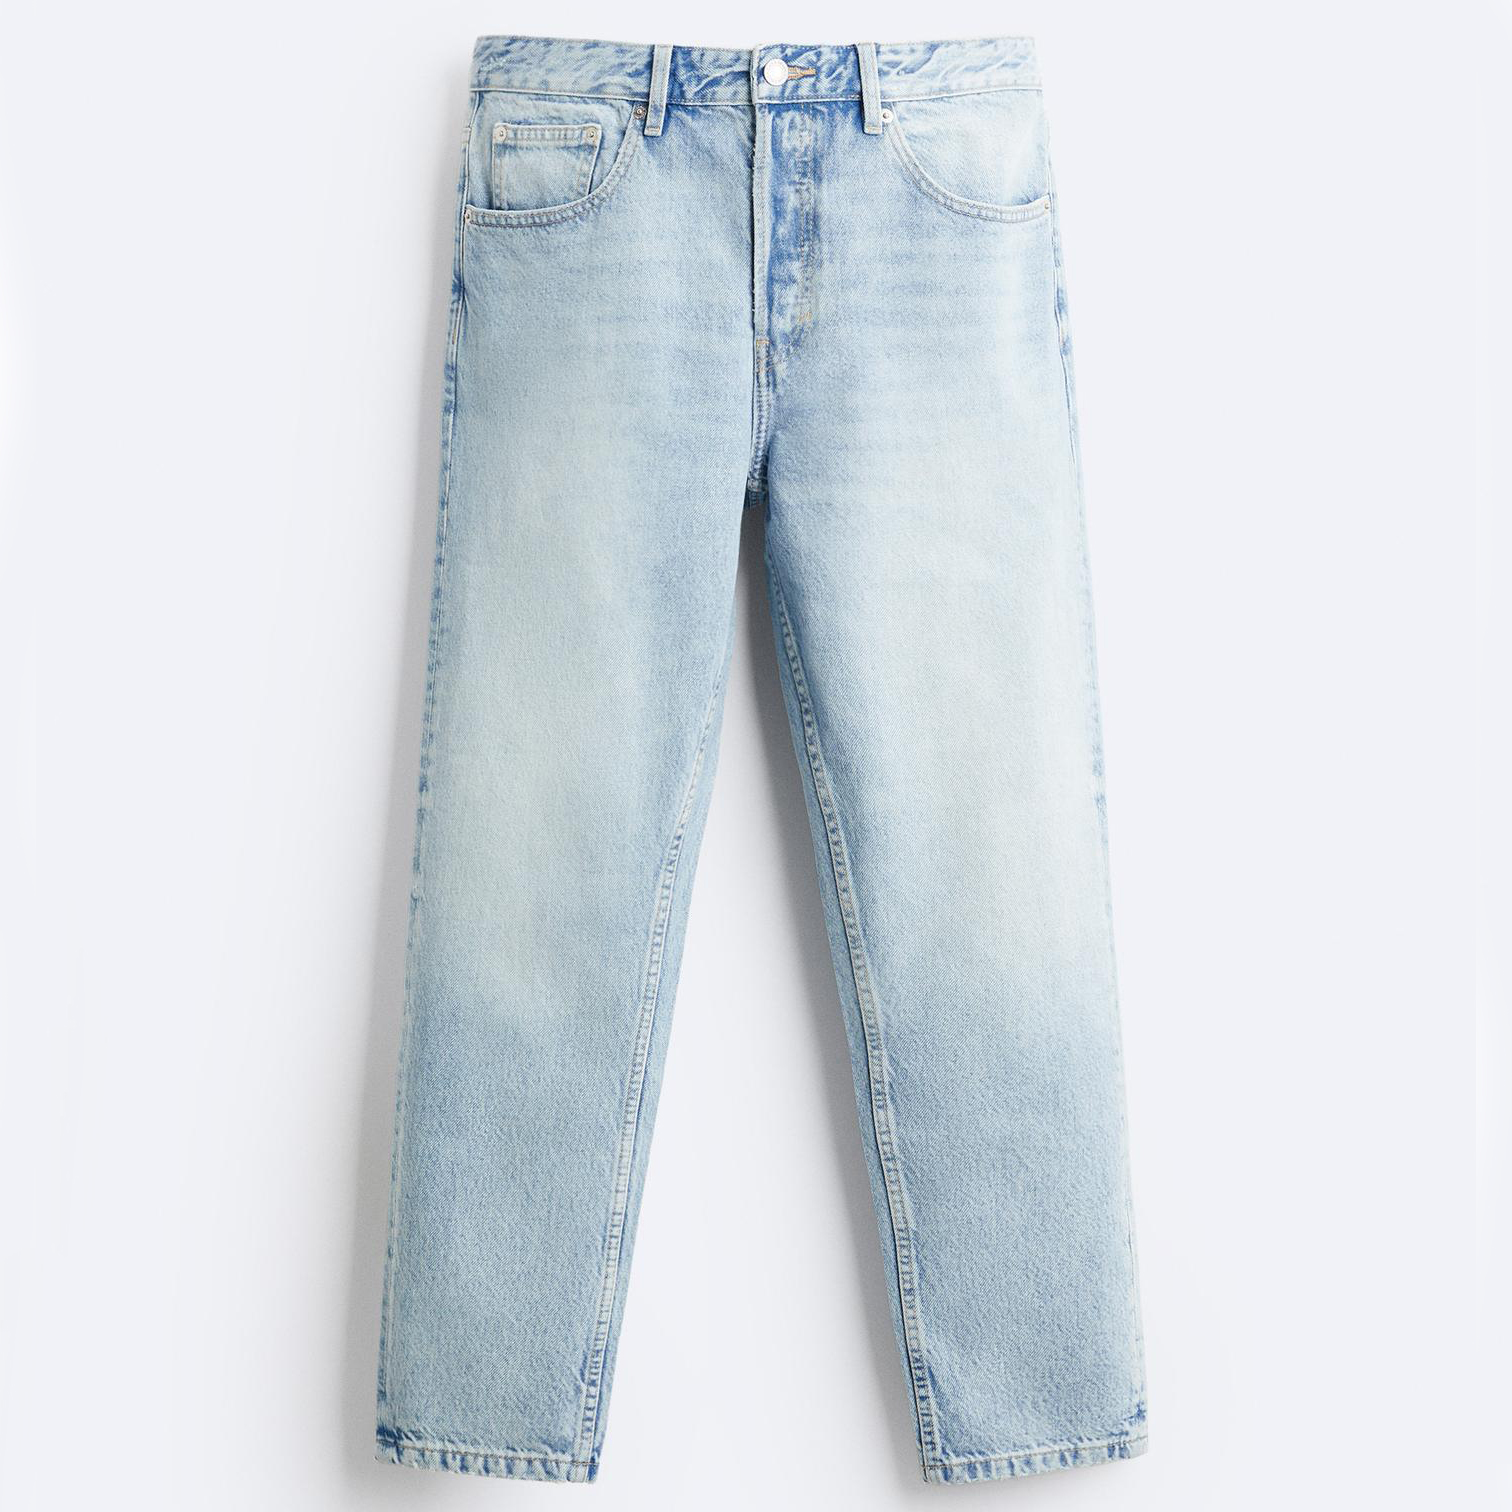 Джинсы Zara Slim Cropped-fit, светло-голубой джинсы узкие 78 застежка на молнию на щиколотке 38 fr 44 rus розовый